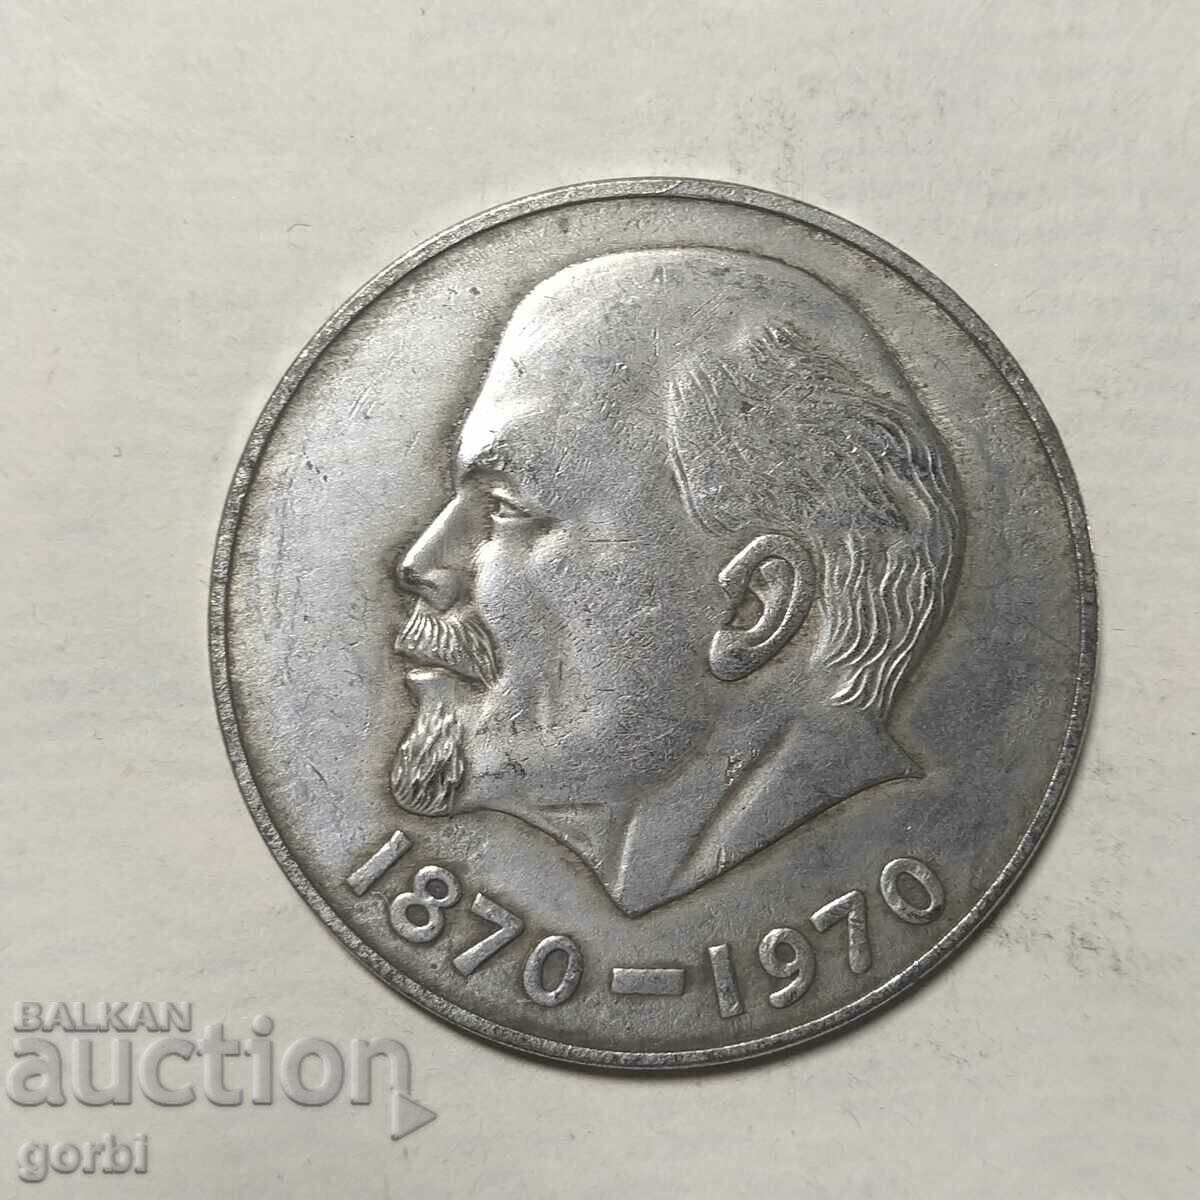 Replica - plaque, medal, Lenin coin